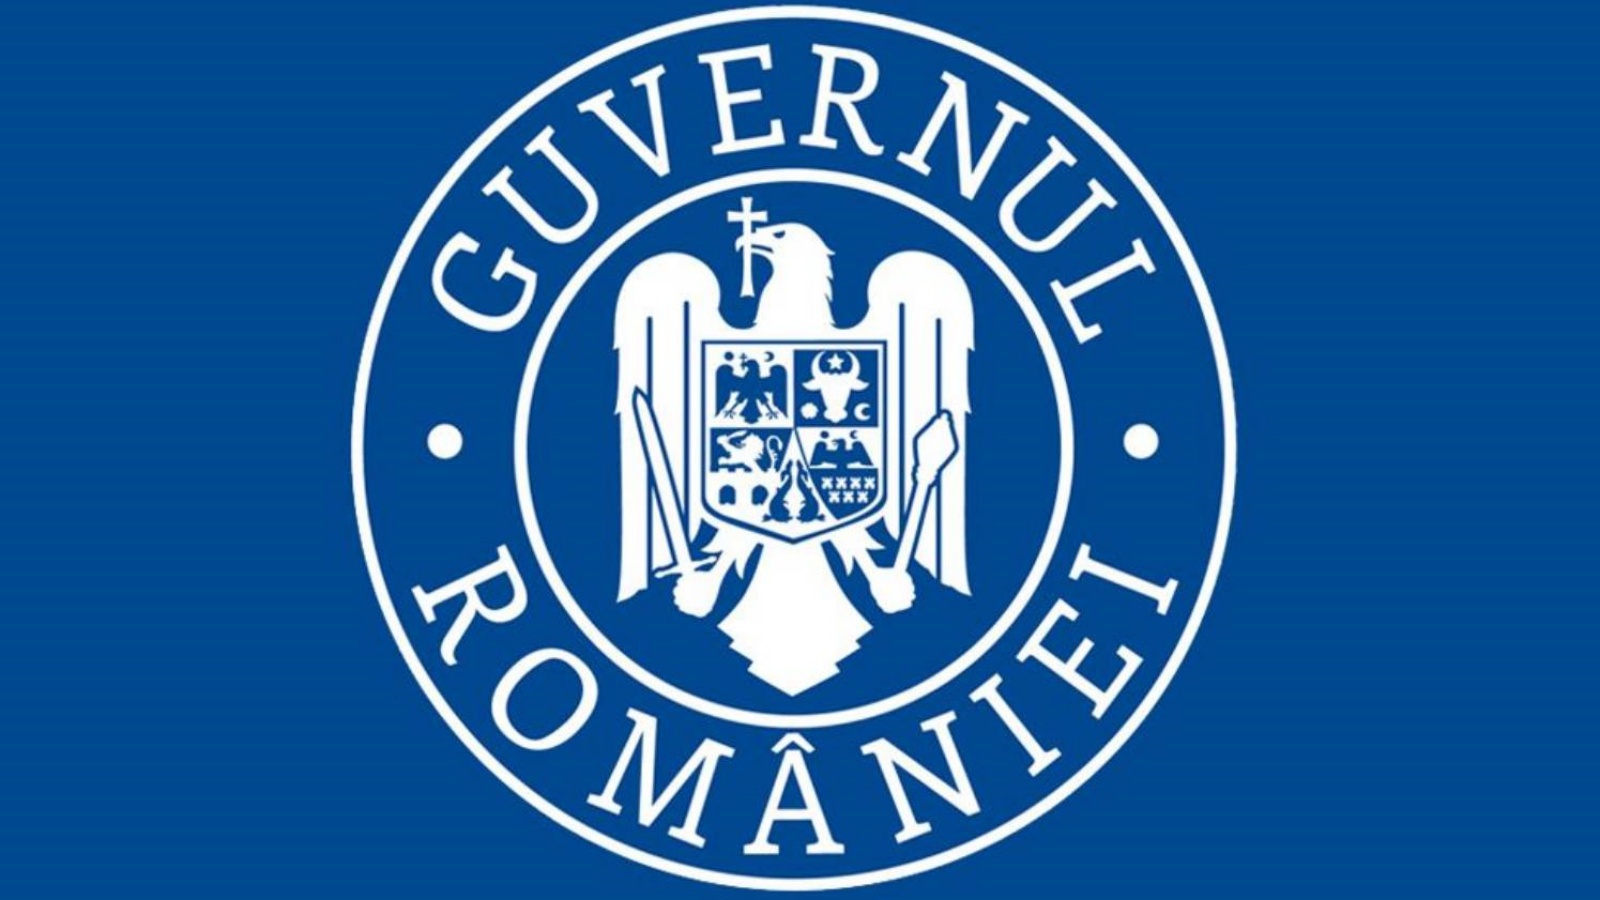 Oświadczenie rządu Rumunii z okazji Światowego Dnia Zdrowia